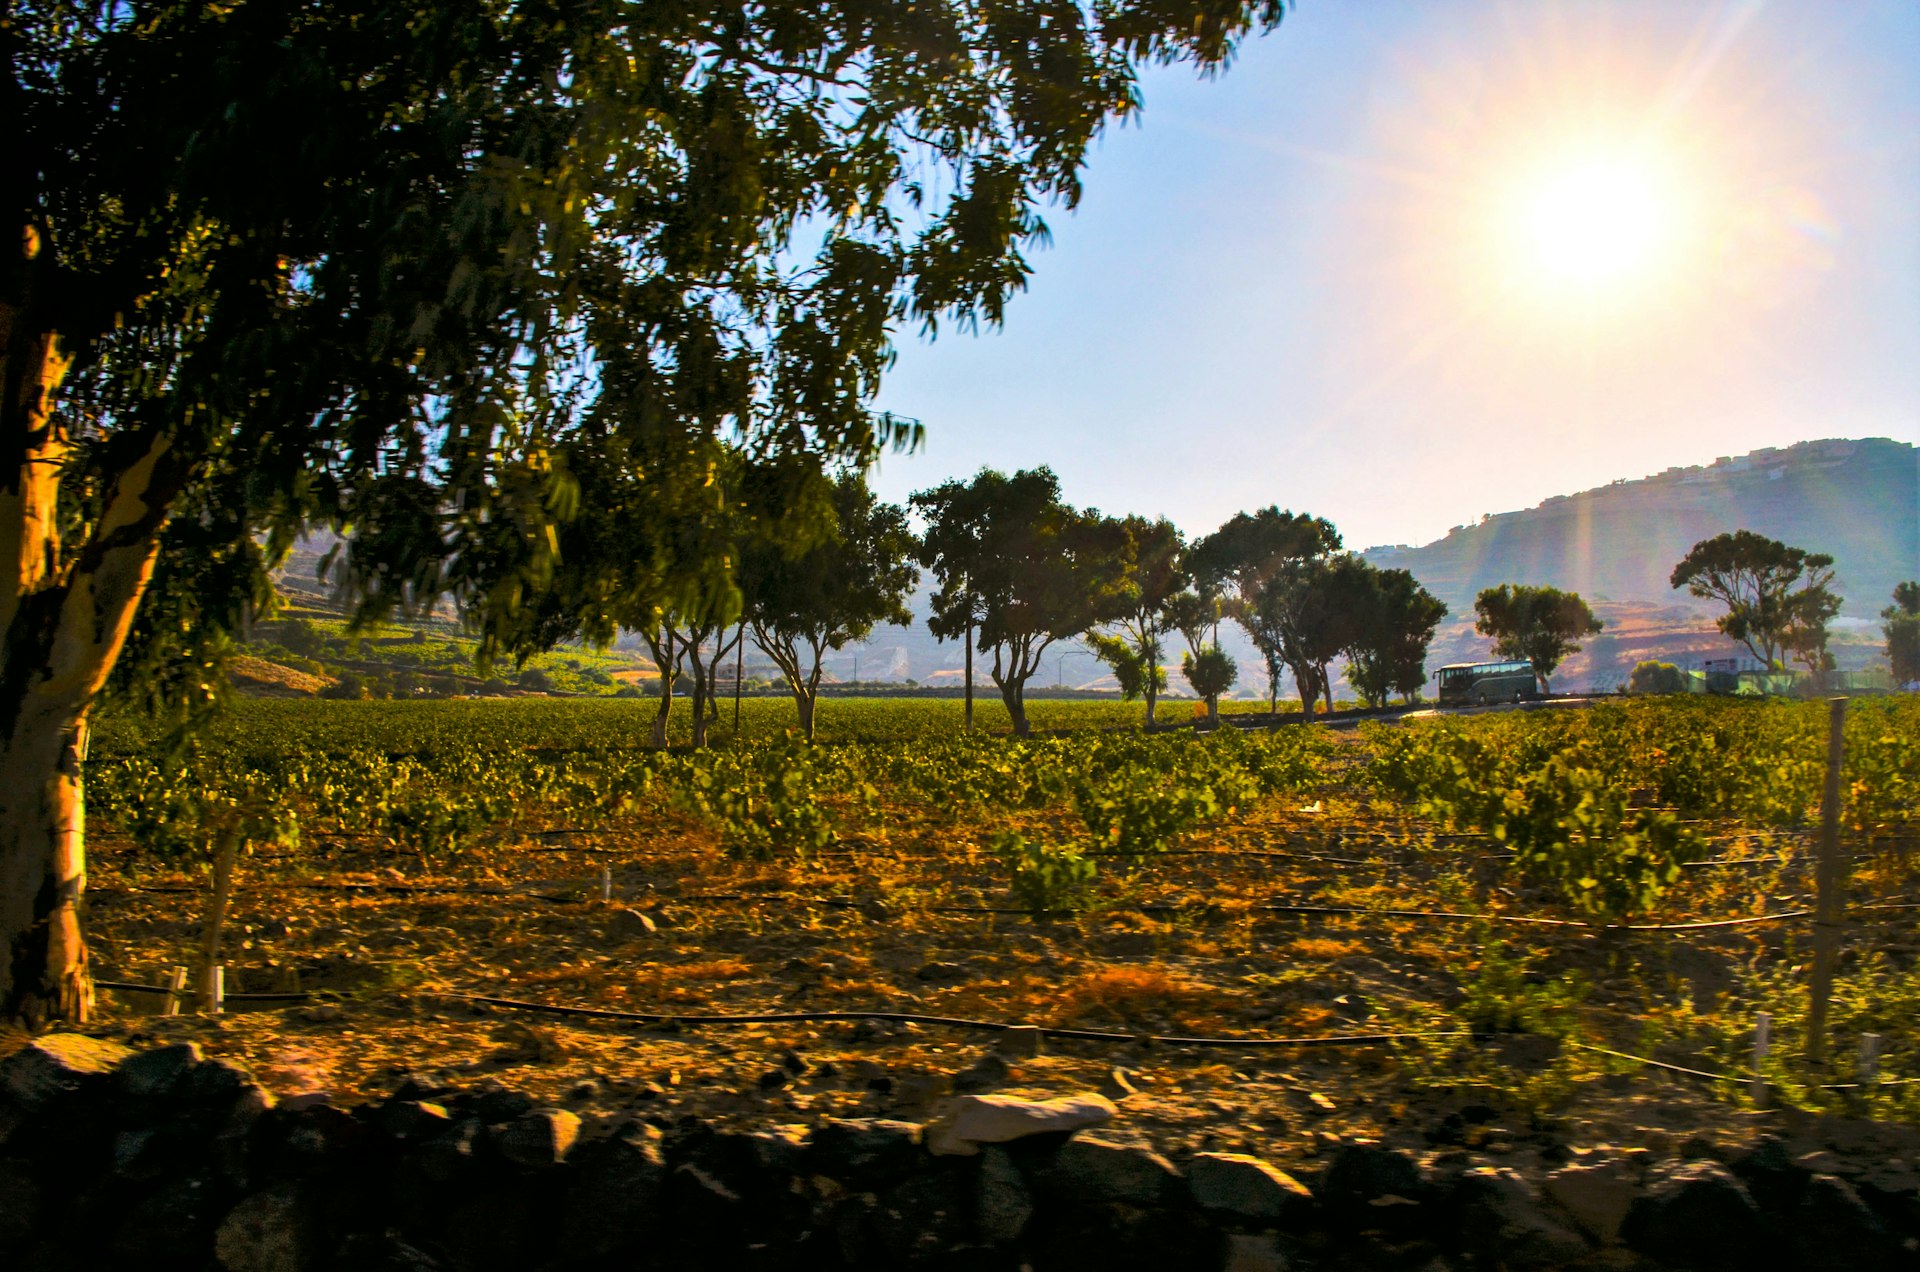 Santorini vineyard in the sun